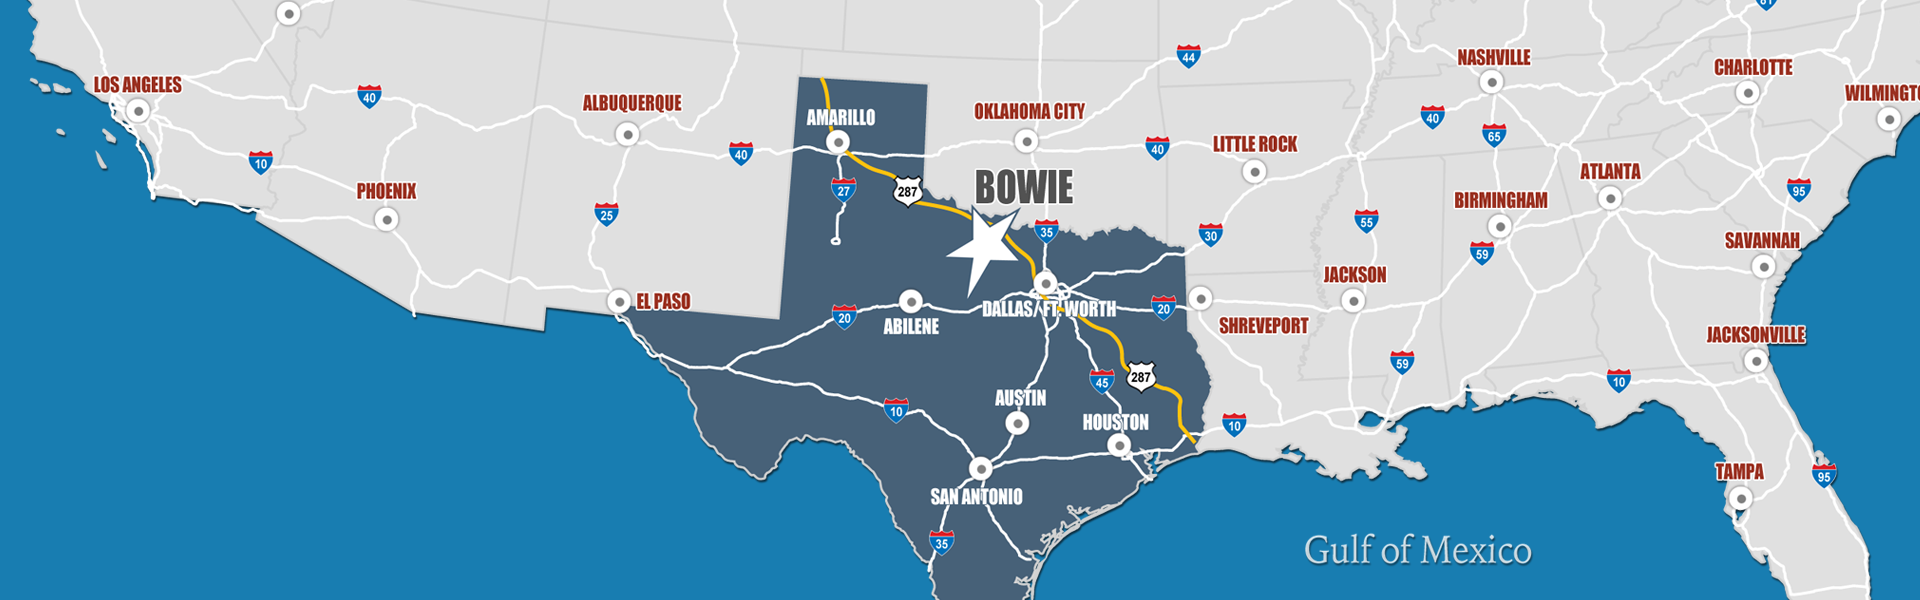 Bowie TX Economic Development map